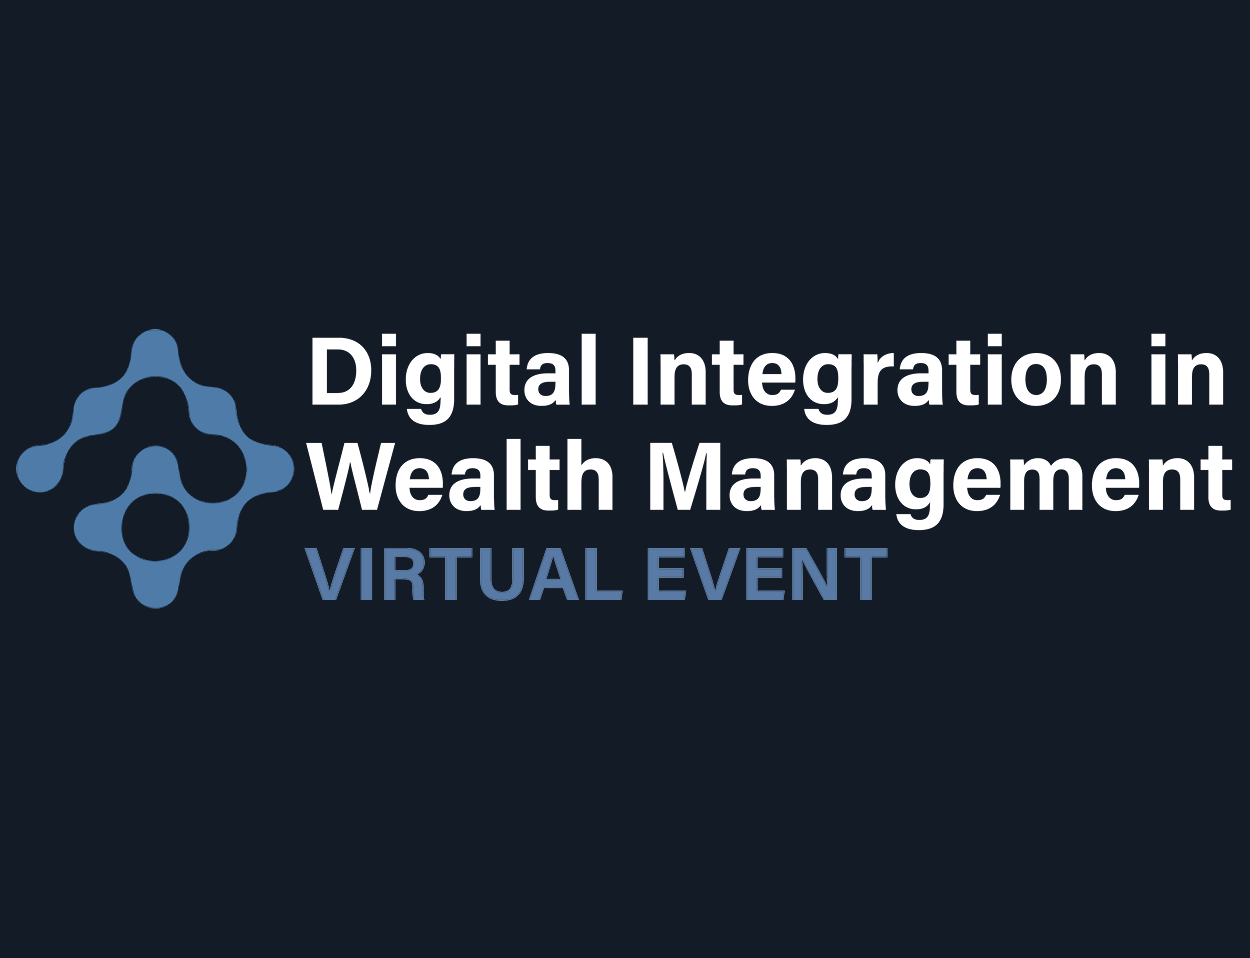 Digital Integration in Wealth Management 2021